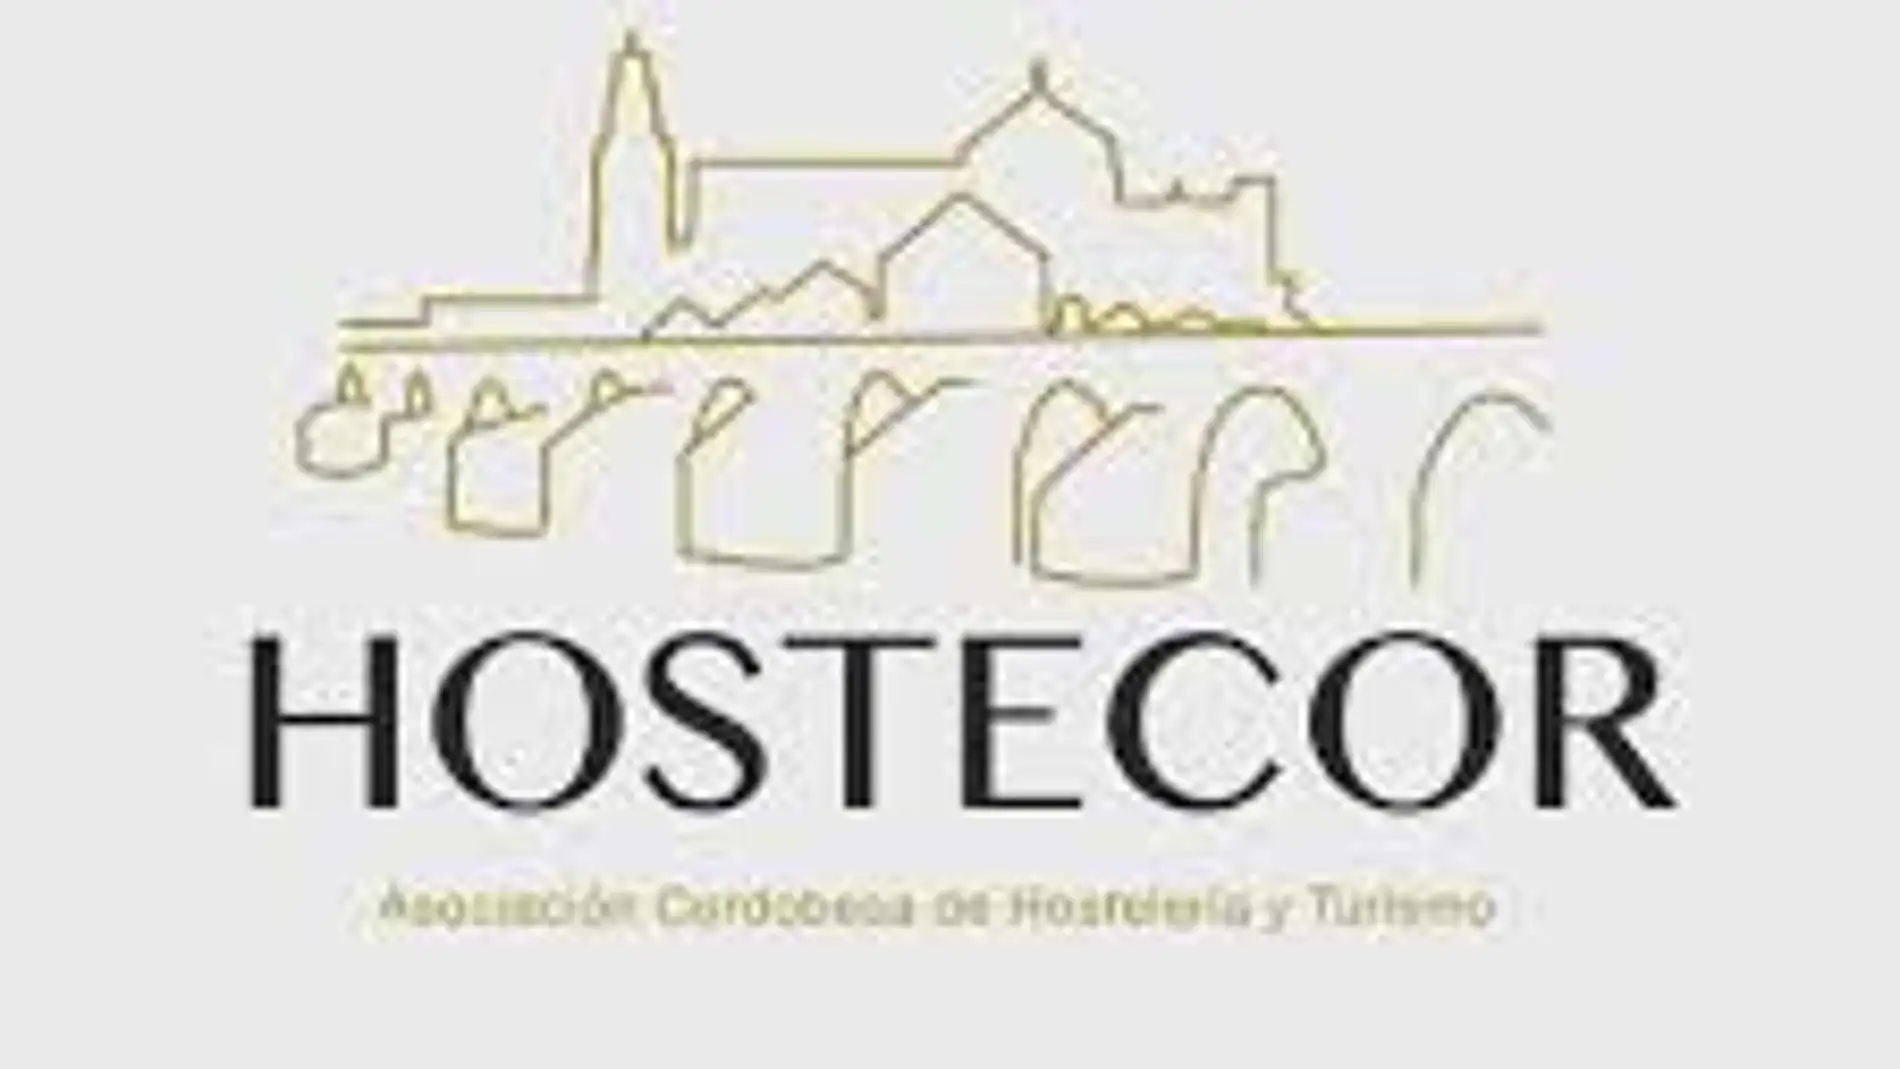 HOSTECOR premia a colectivos por su implicación con el sector hostelero durante la pandemia